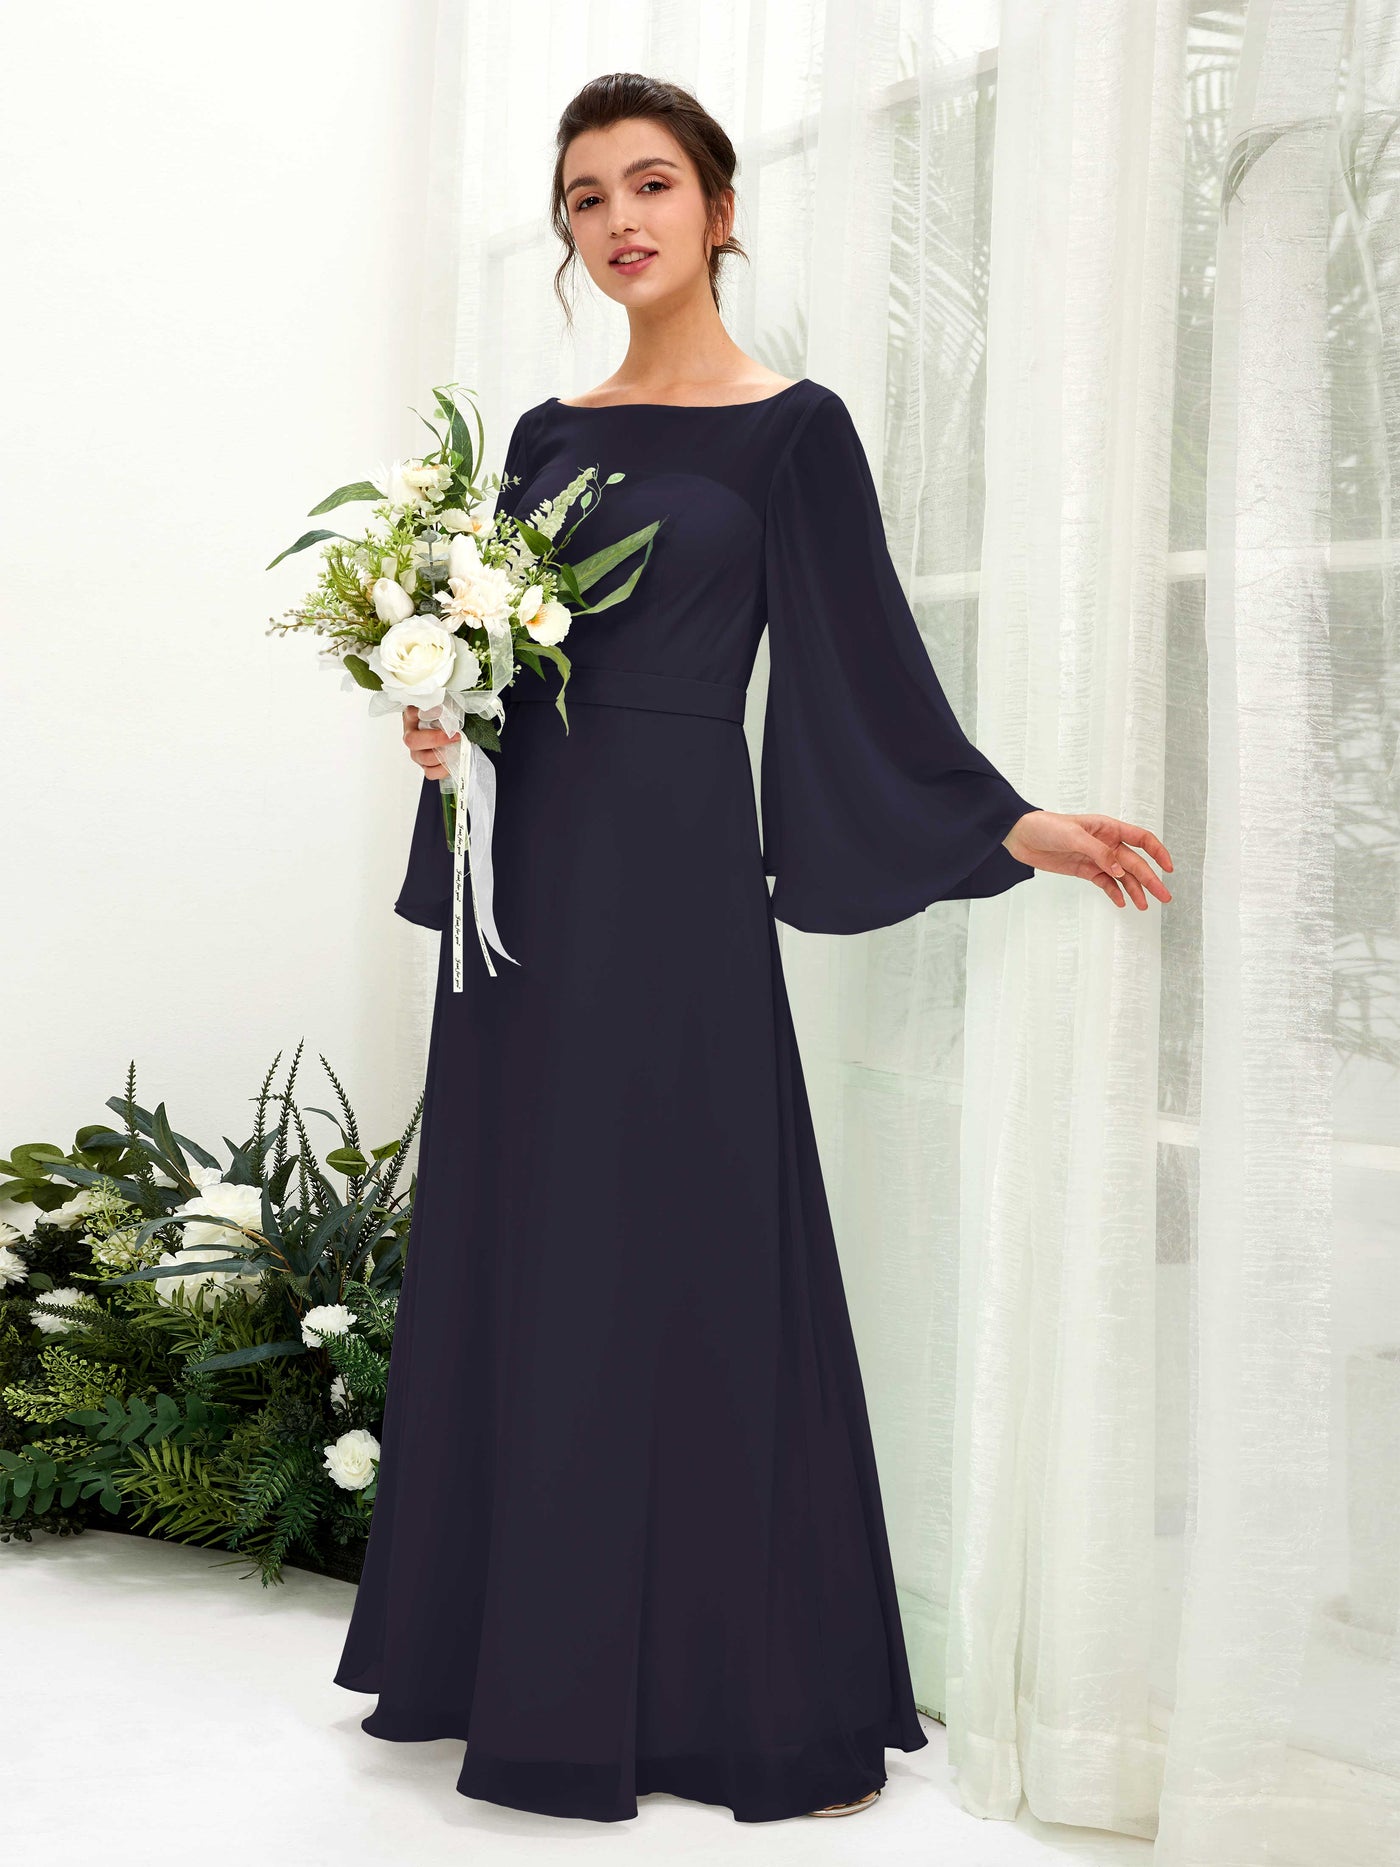 Bateau Illusion Long Sleeves Chiffon Bridesmaid Dress  (81220518)#color_dark-navy